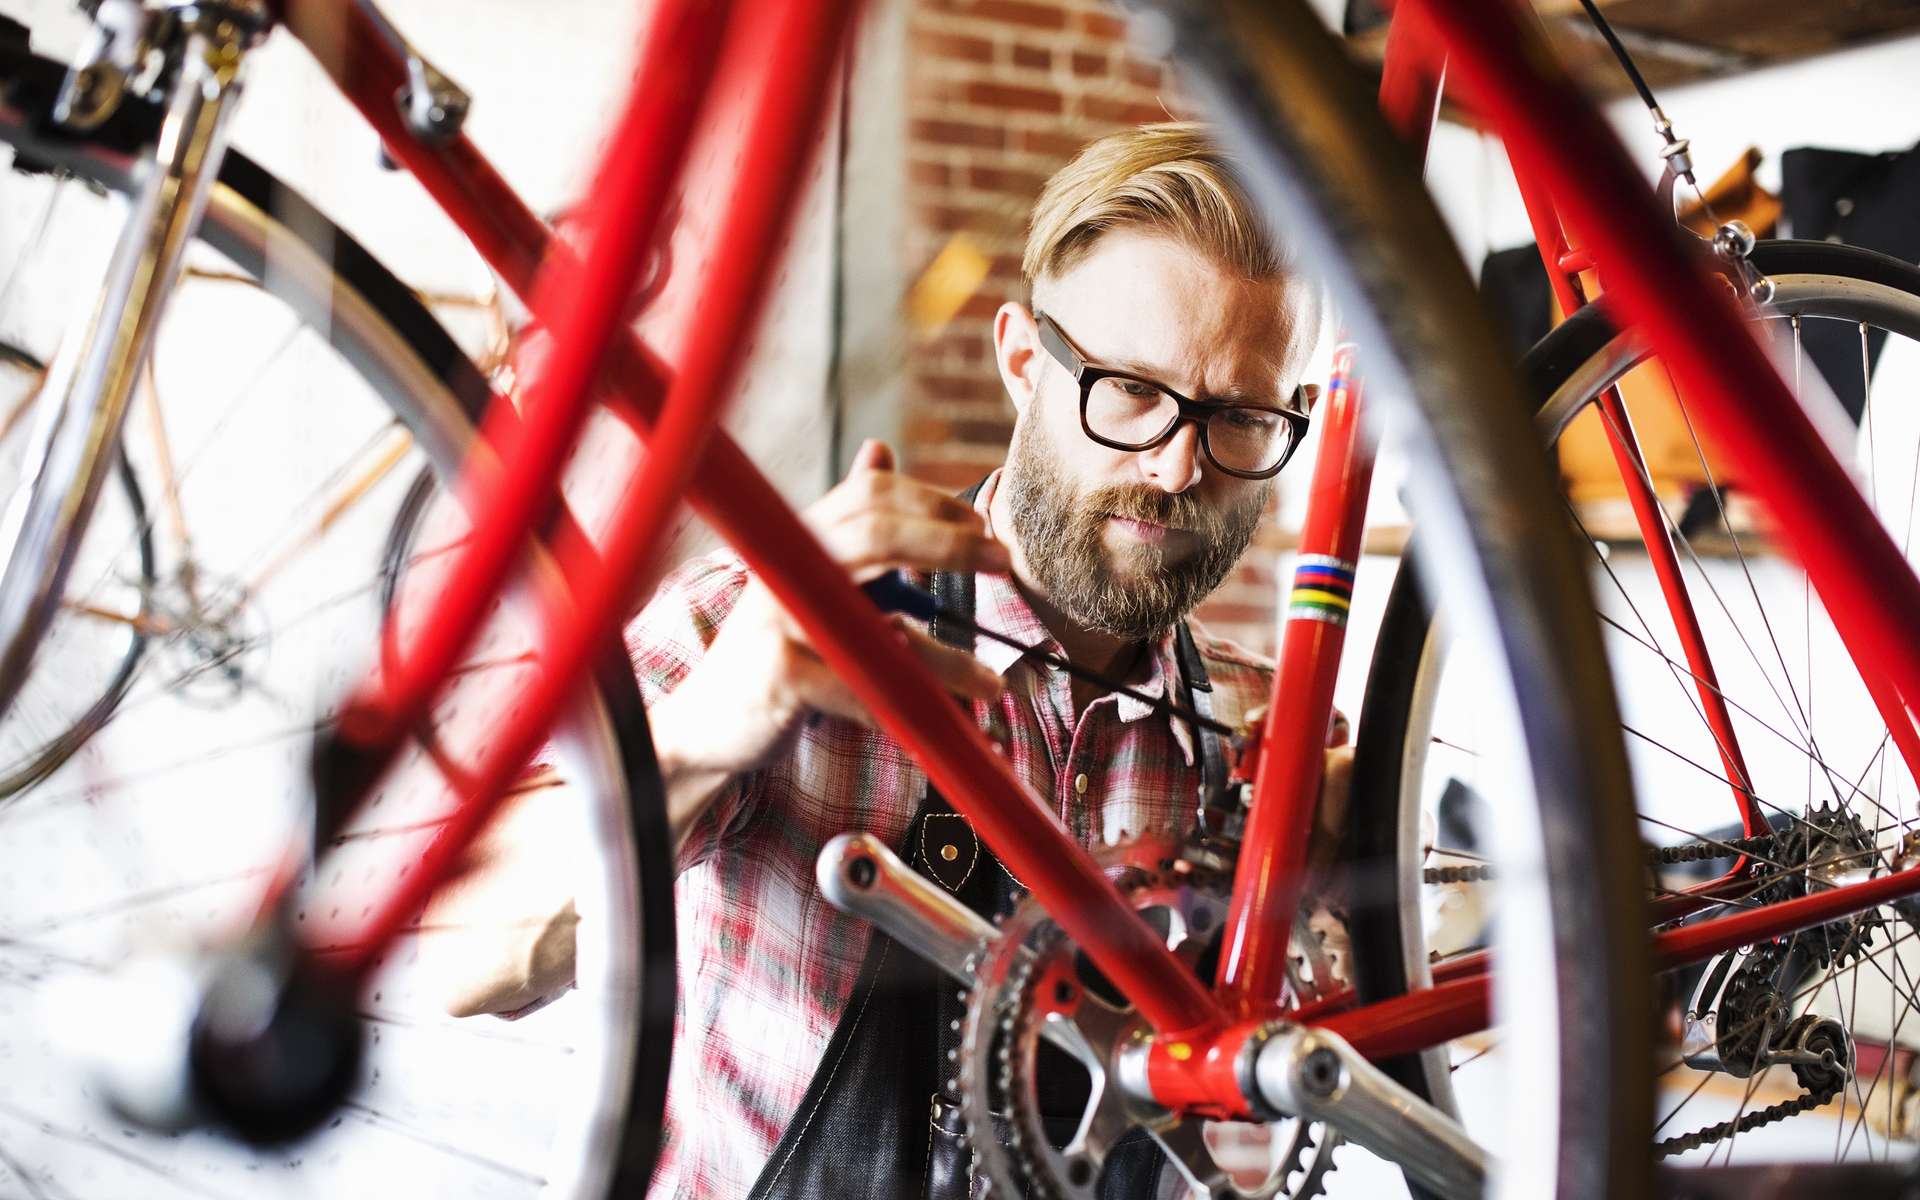 Avant d'enfourcher le vélo, il faut vérifier quelques éléments importants pour éviter d'avoir un incident mécanique sur la route. © MintImages, Shutterstock